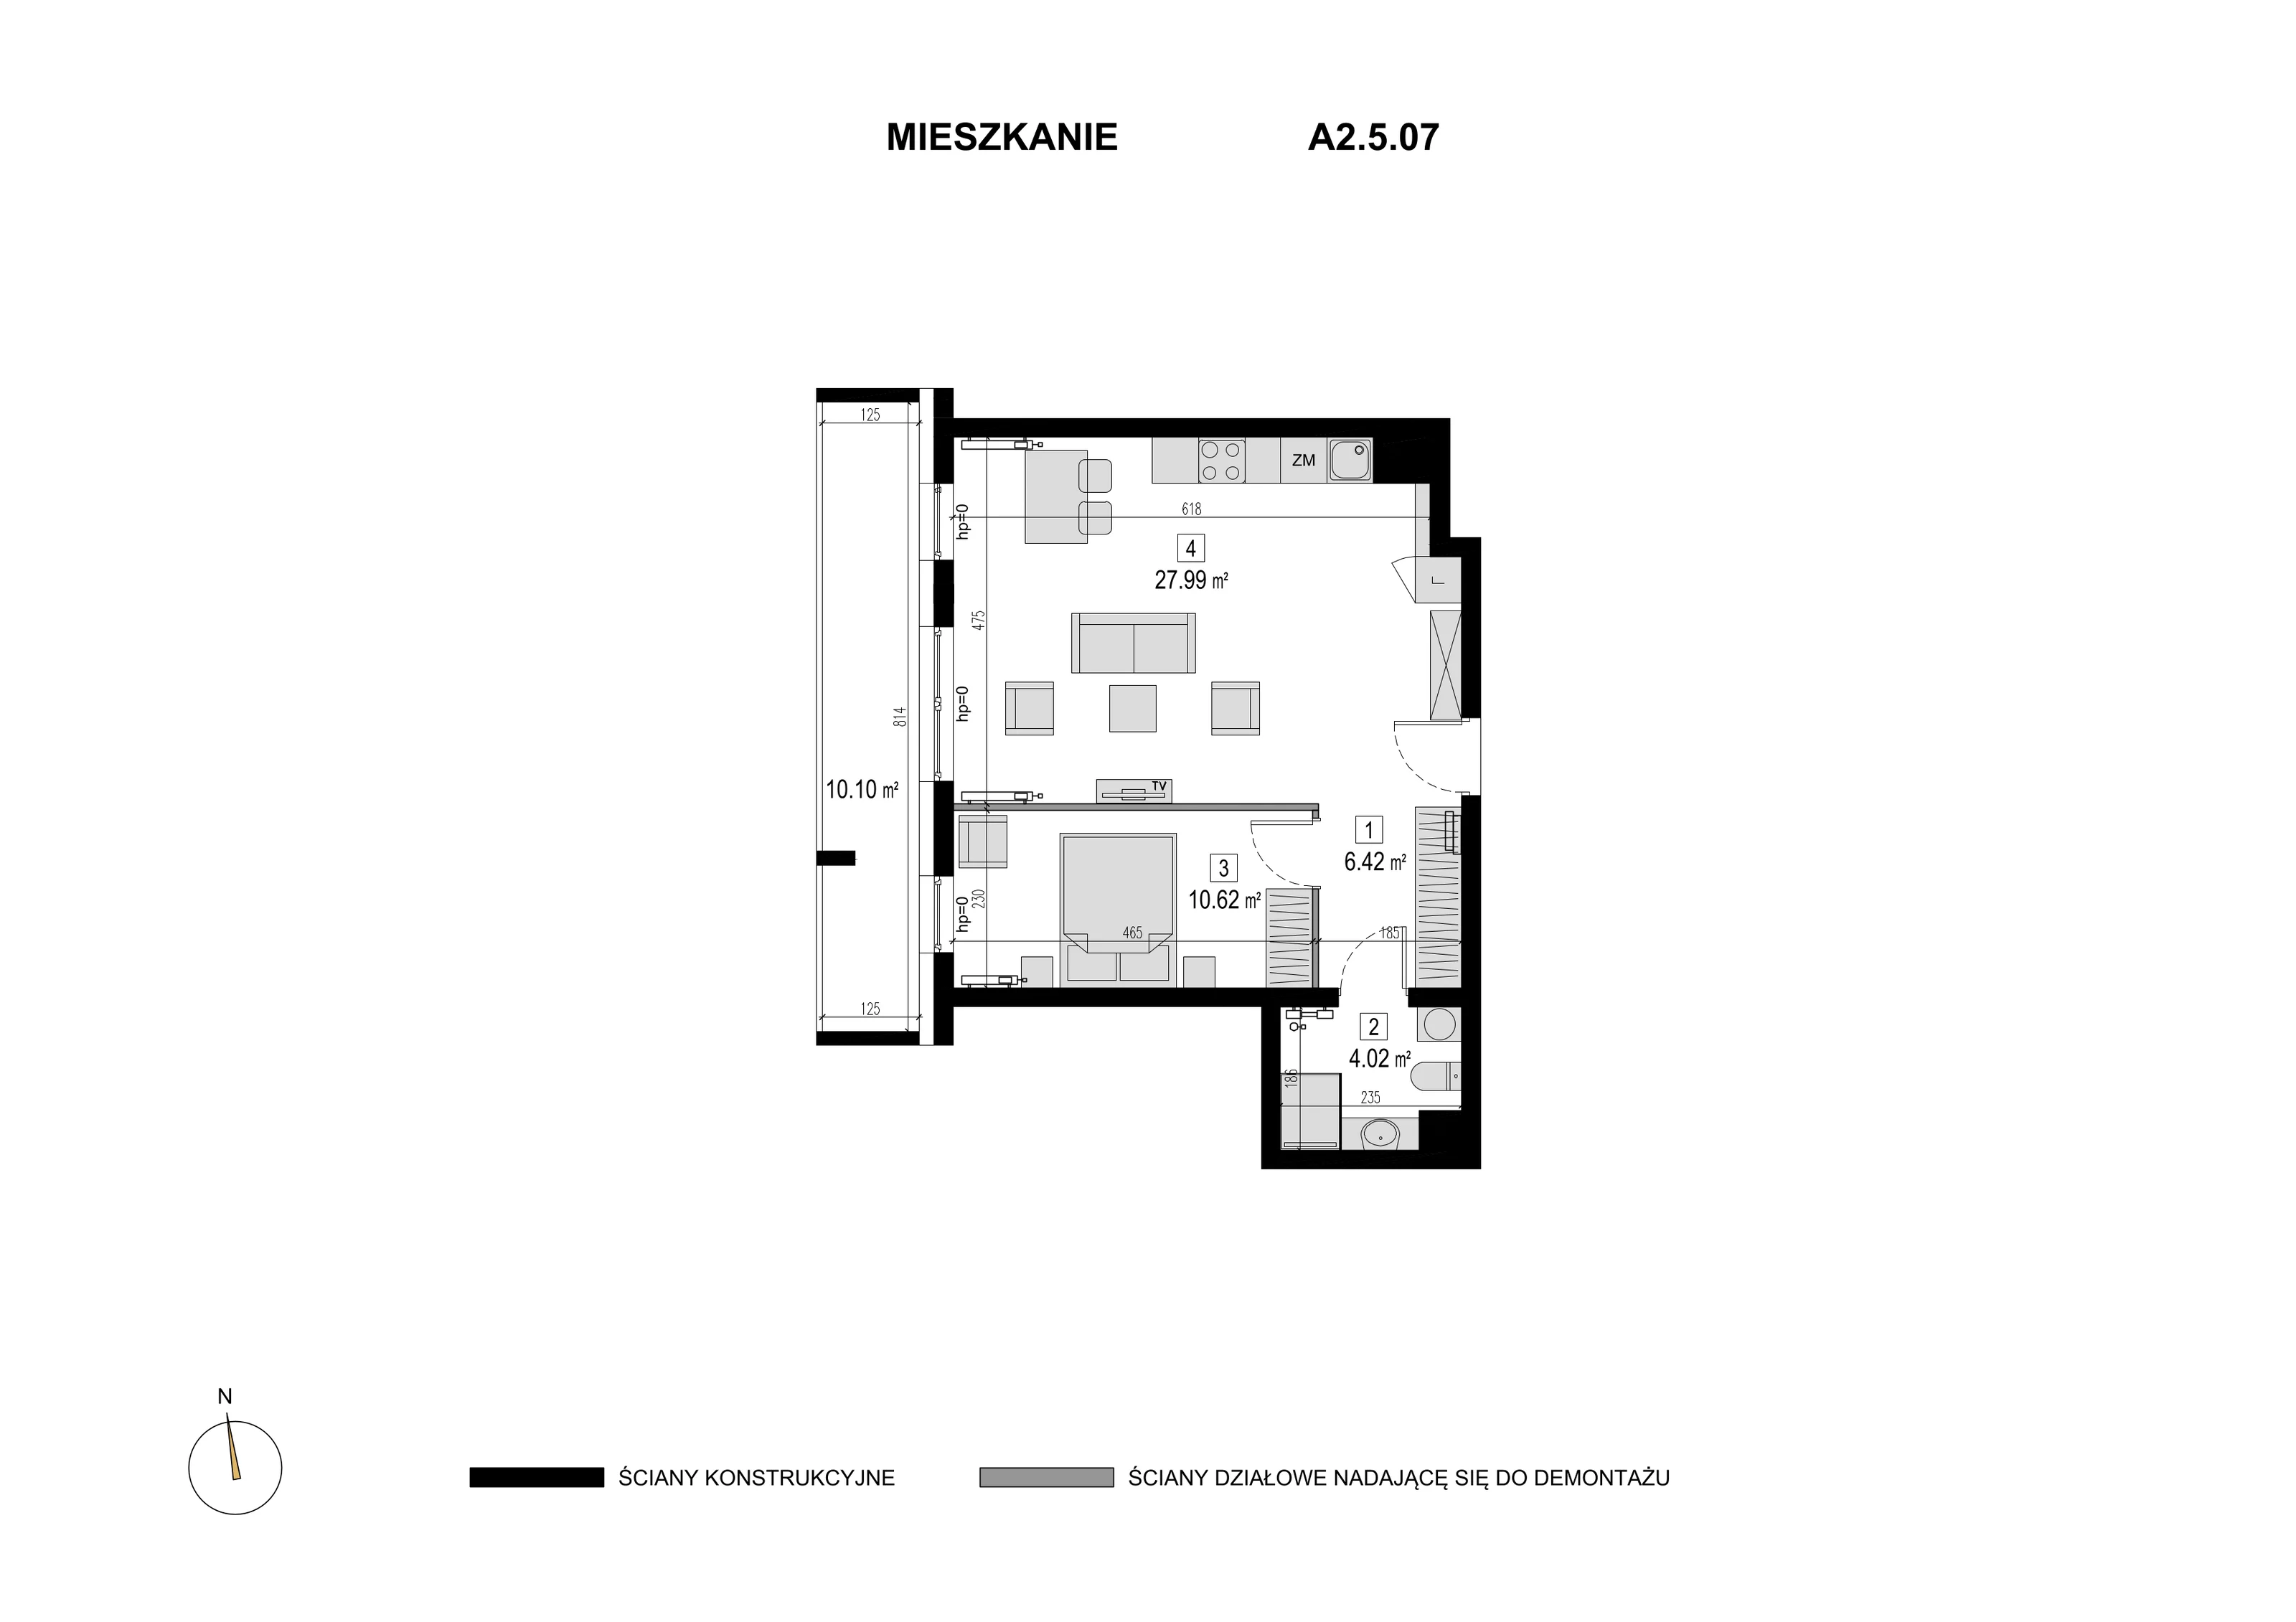 Mieszkanie 49,05 m², piętro 4, oferta nr A2.5.07, Novaforma, Legnica, ul. Chojnowska